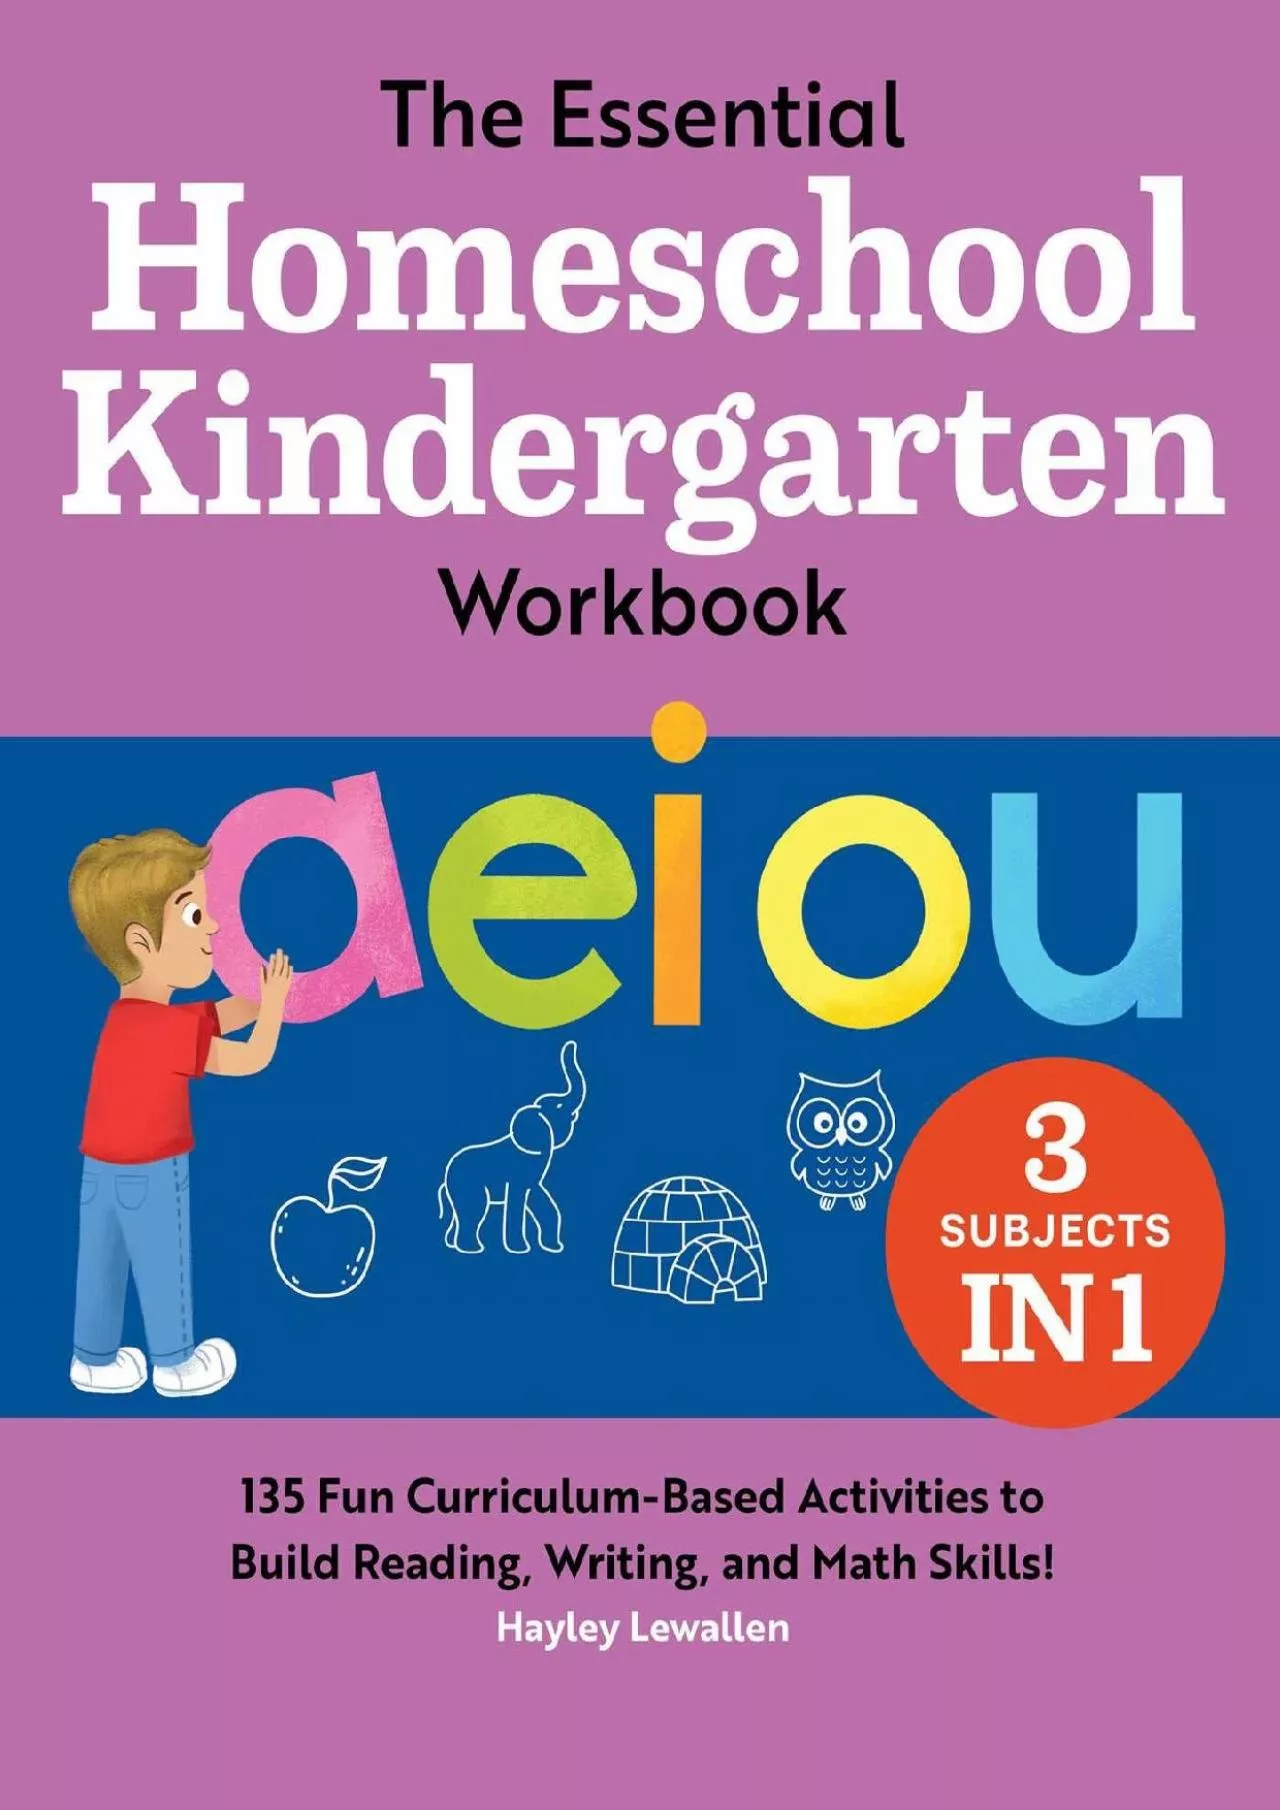 [READ] The Essential Homeschool Kindergarten Workbook: 135 Fun Curriculum-Based Activities